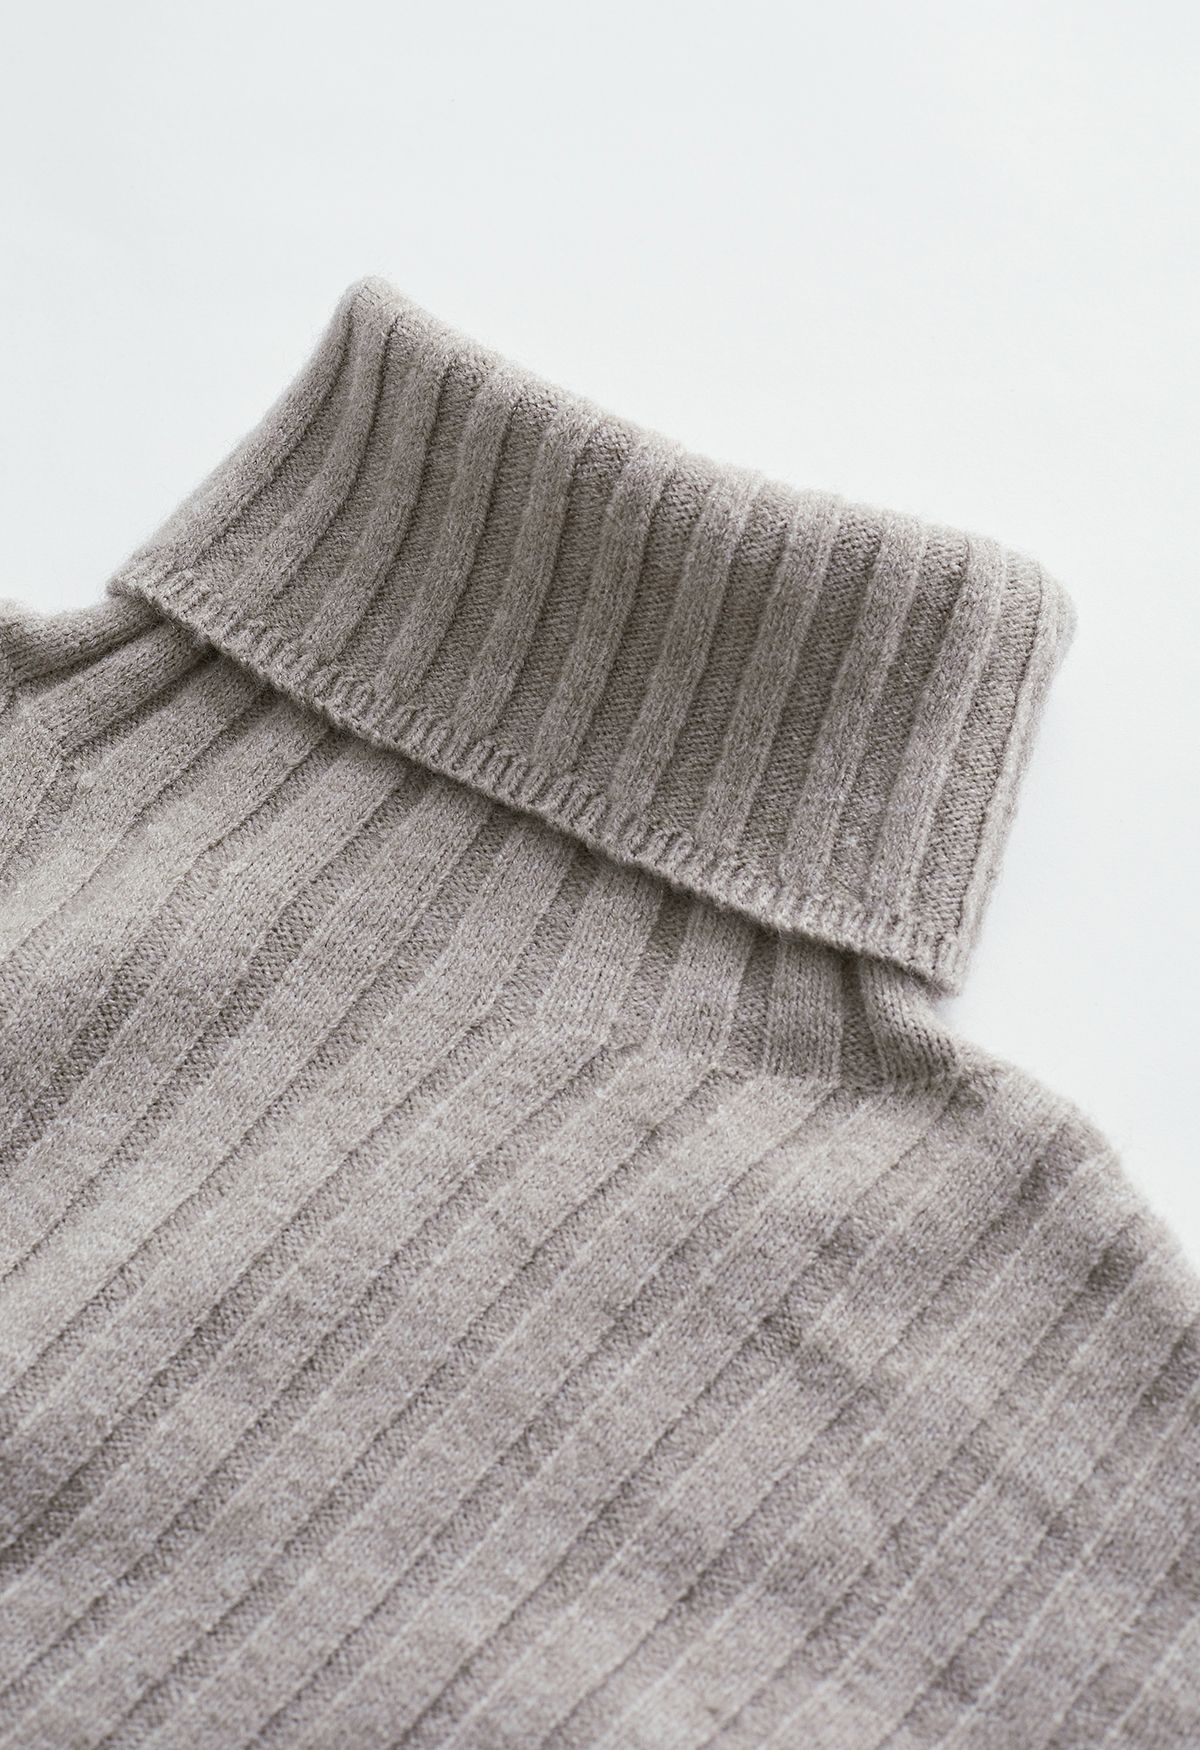 Sweater de malha com mangas turtleneck em taupe